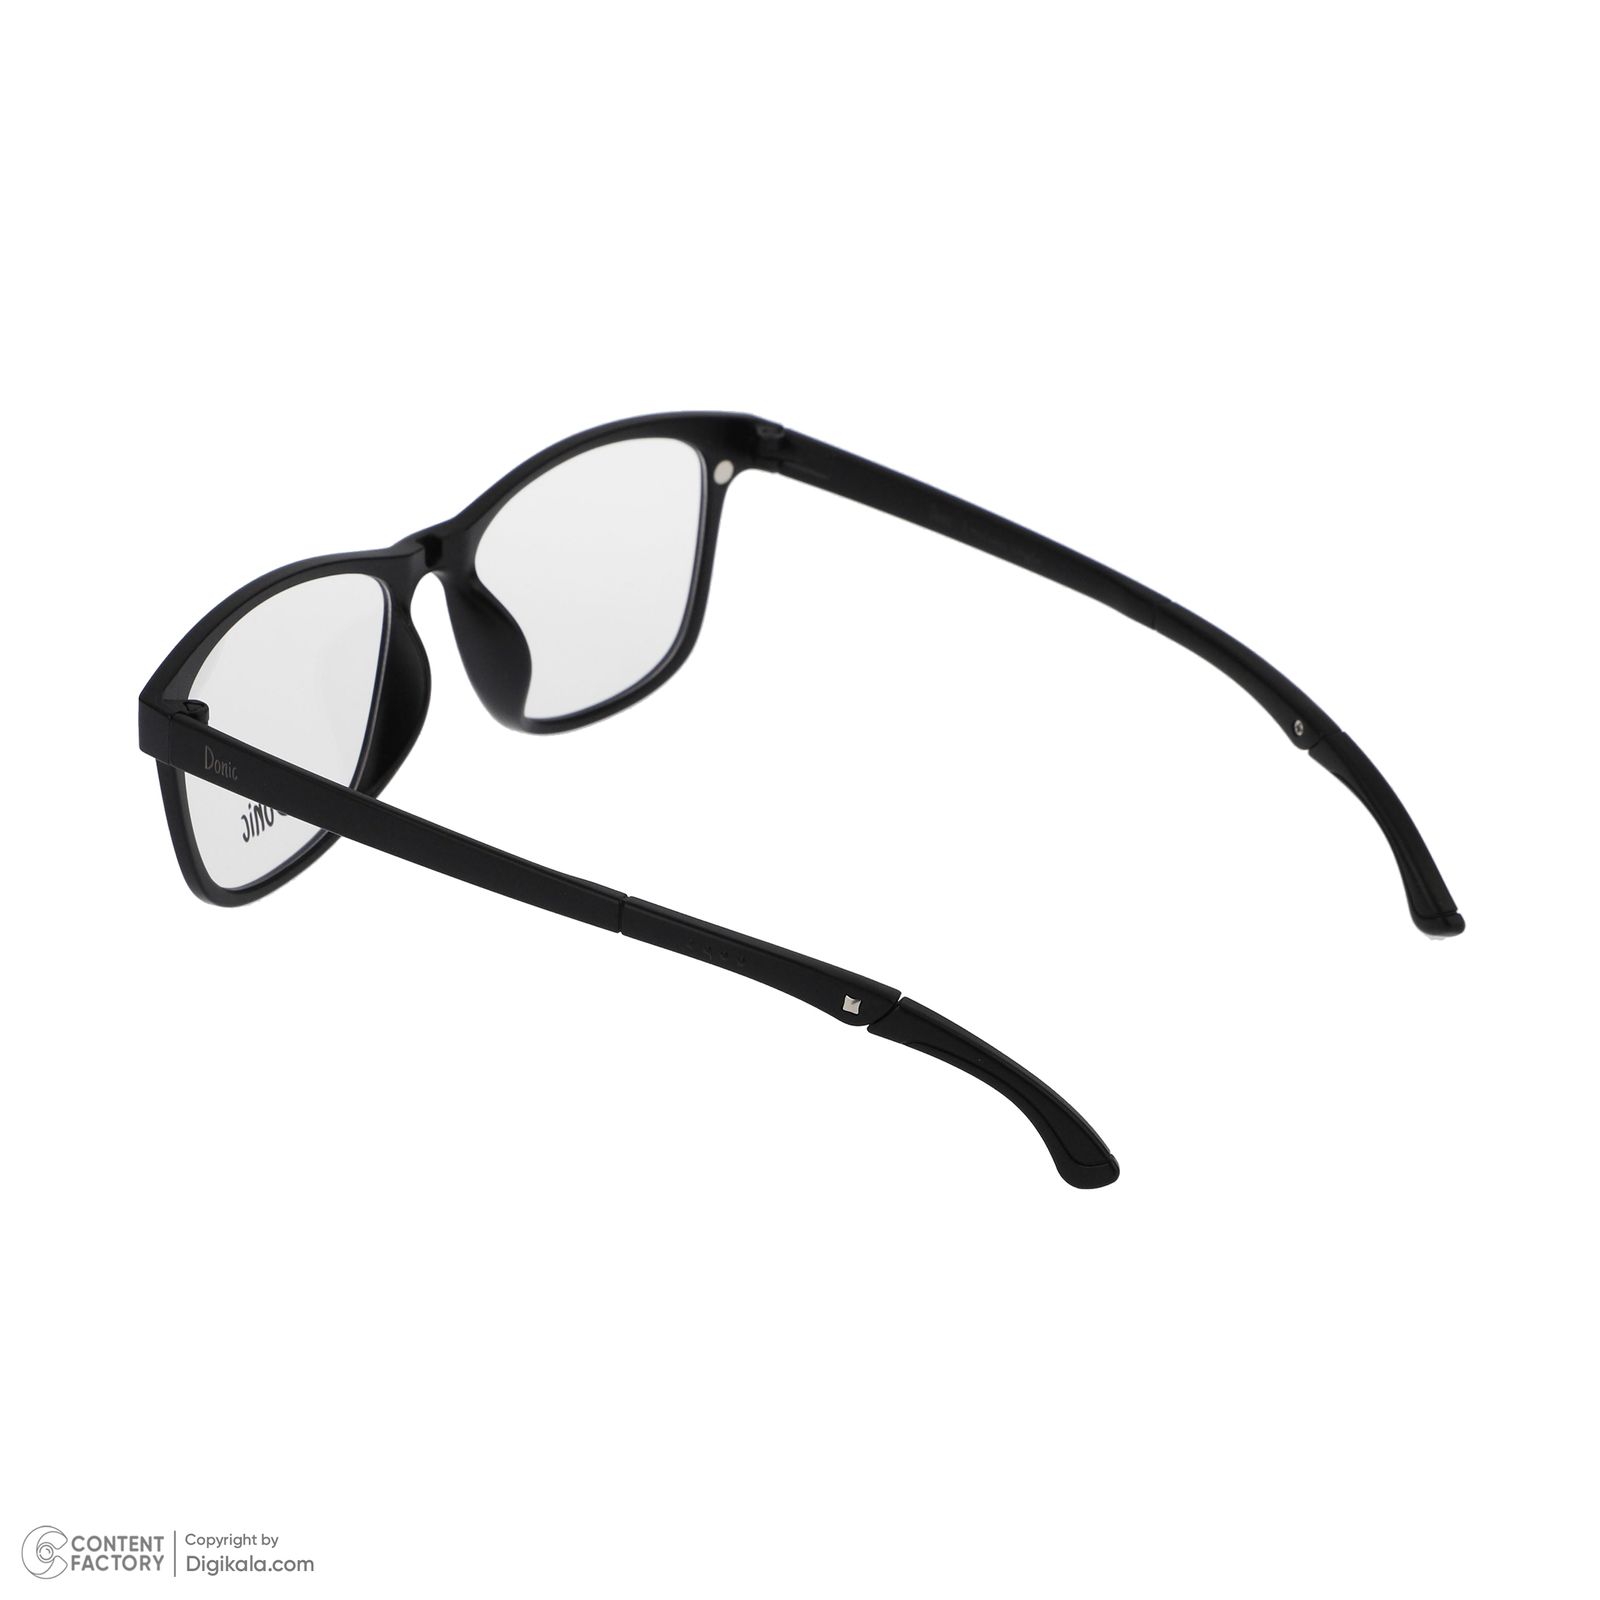 فریم عینک طبی دونیک مدل tr2515-c2 به همراه کاور آفتابی مجموعه 6 عددی -  - 4